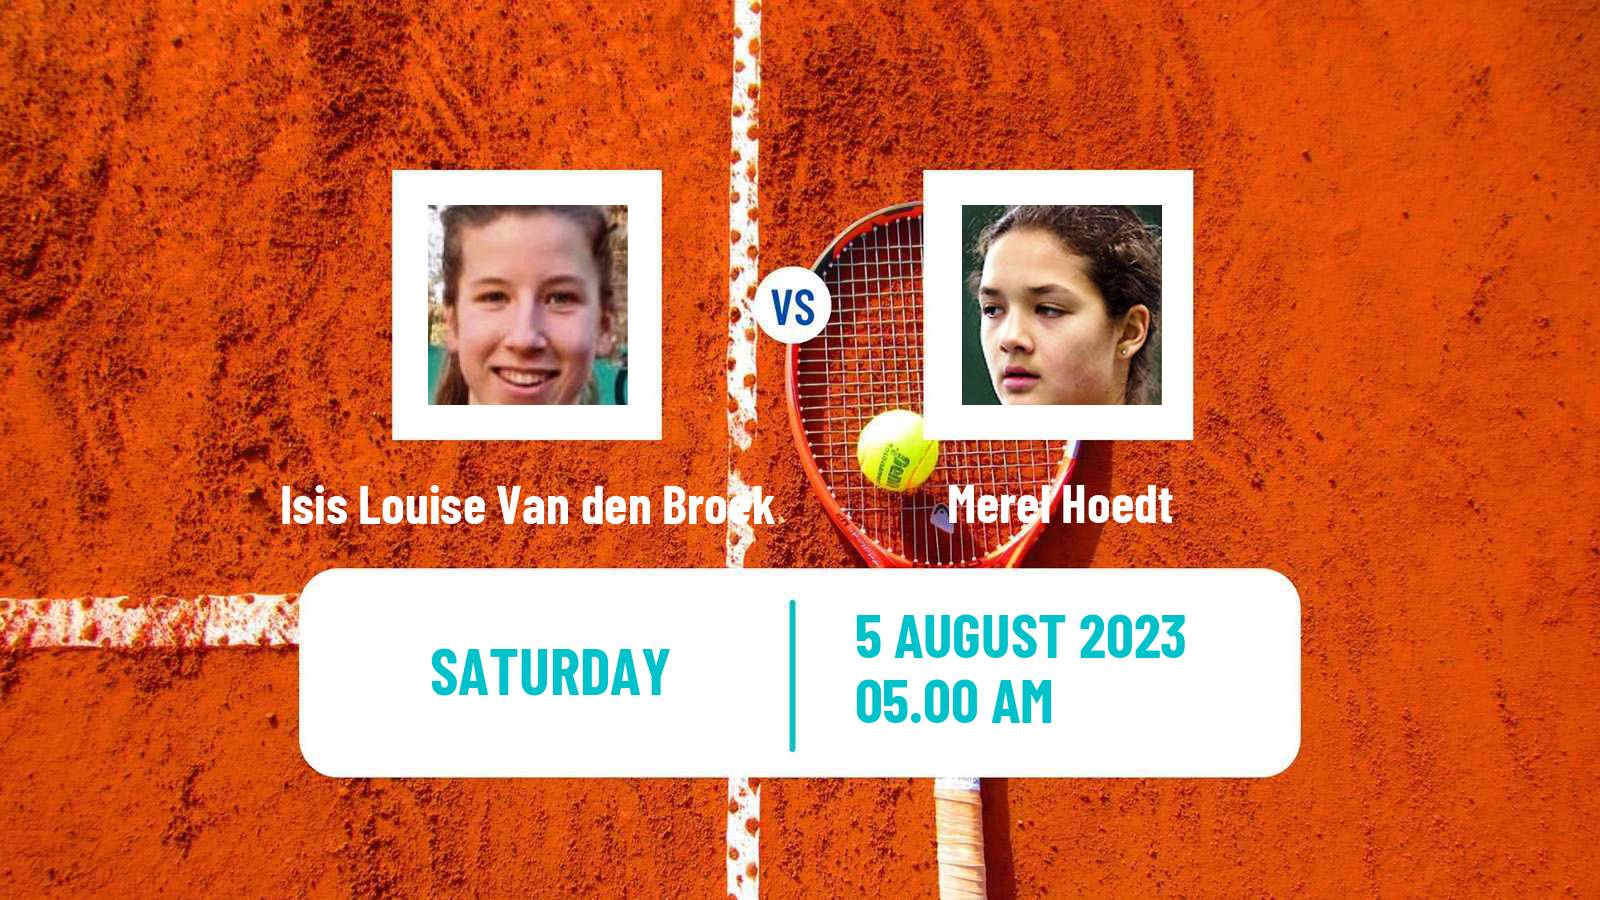 Tennis ITF W15 Eindhoven Women Isis Louise Van den Broek - Merel Hoedt